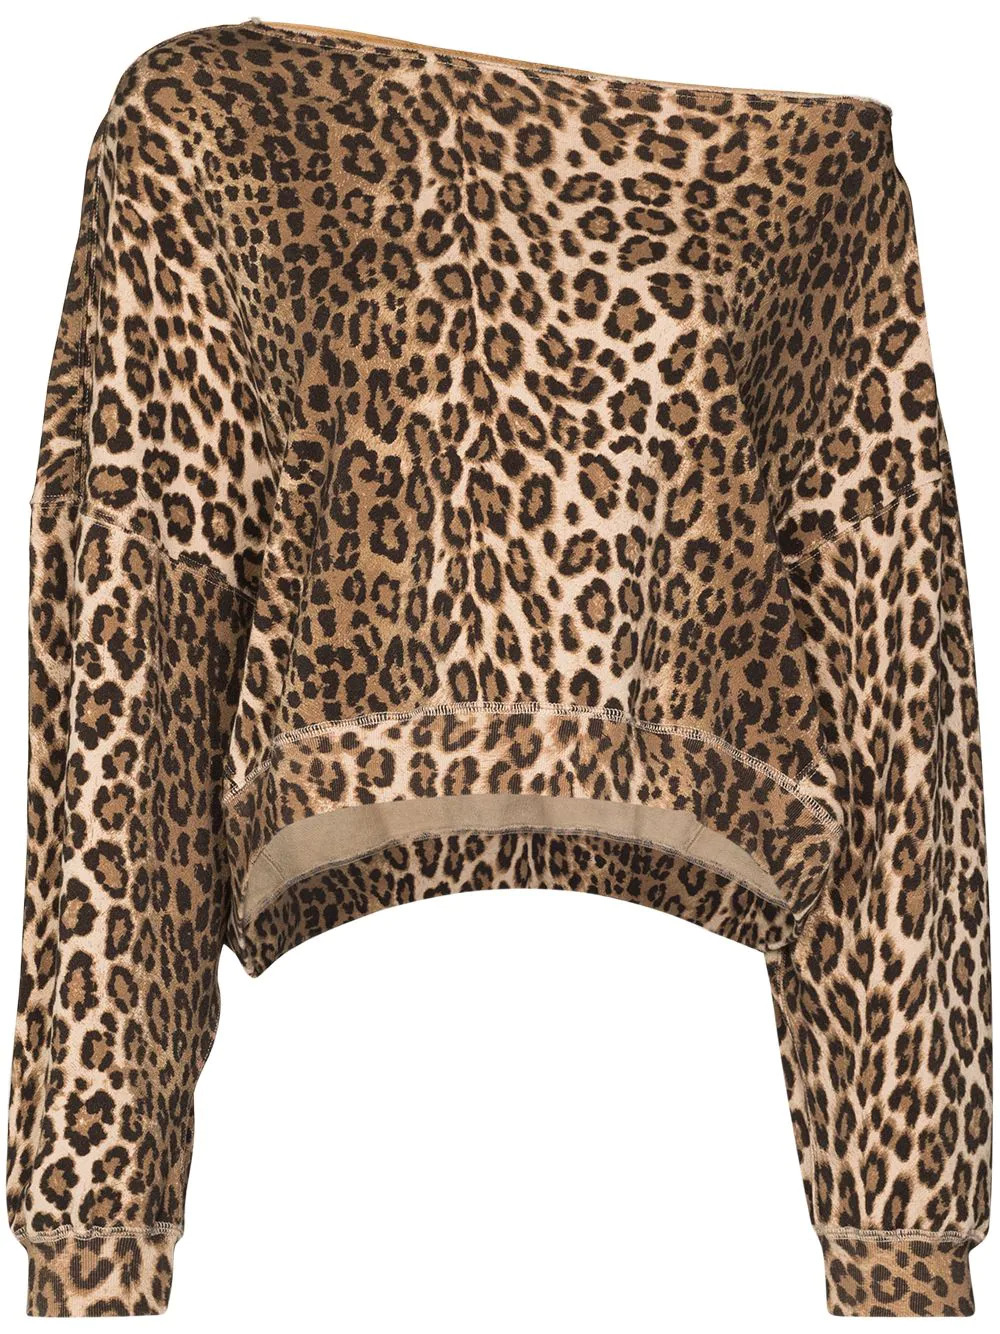 Sweatshirt mit Leopardenmuster